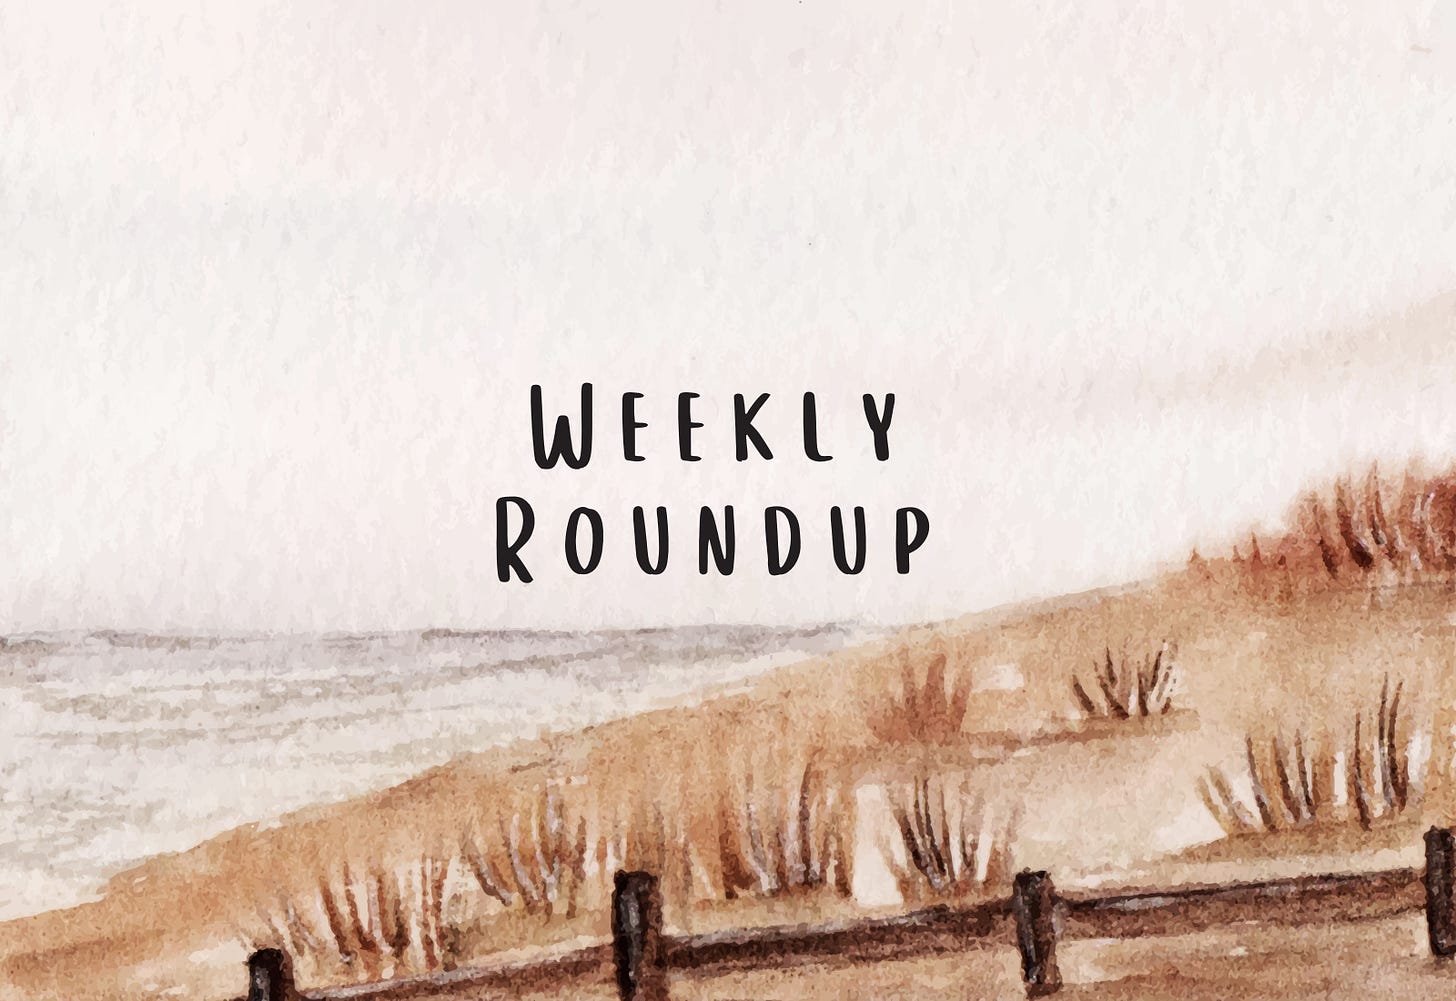 Image says "Weekly Roundup."